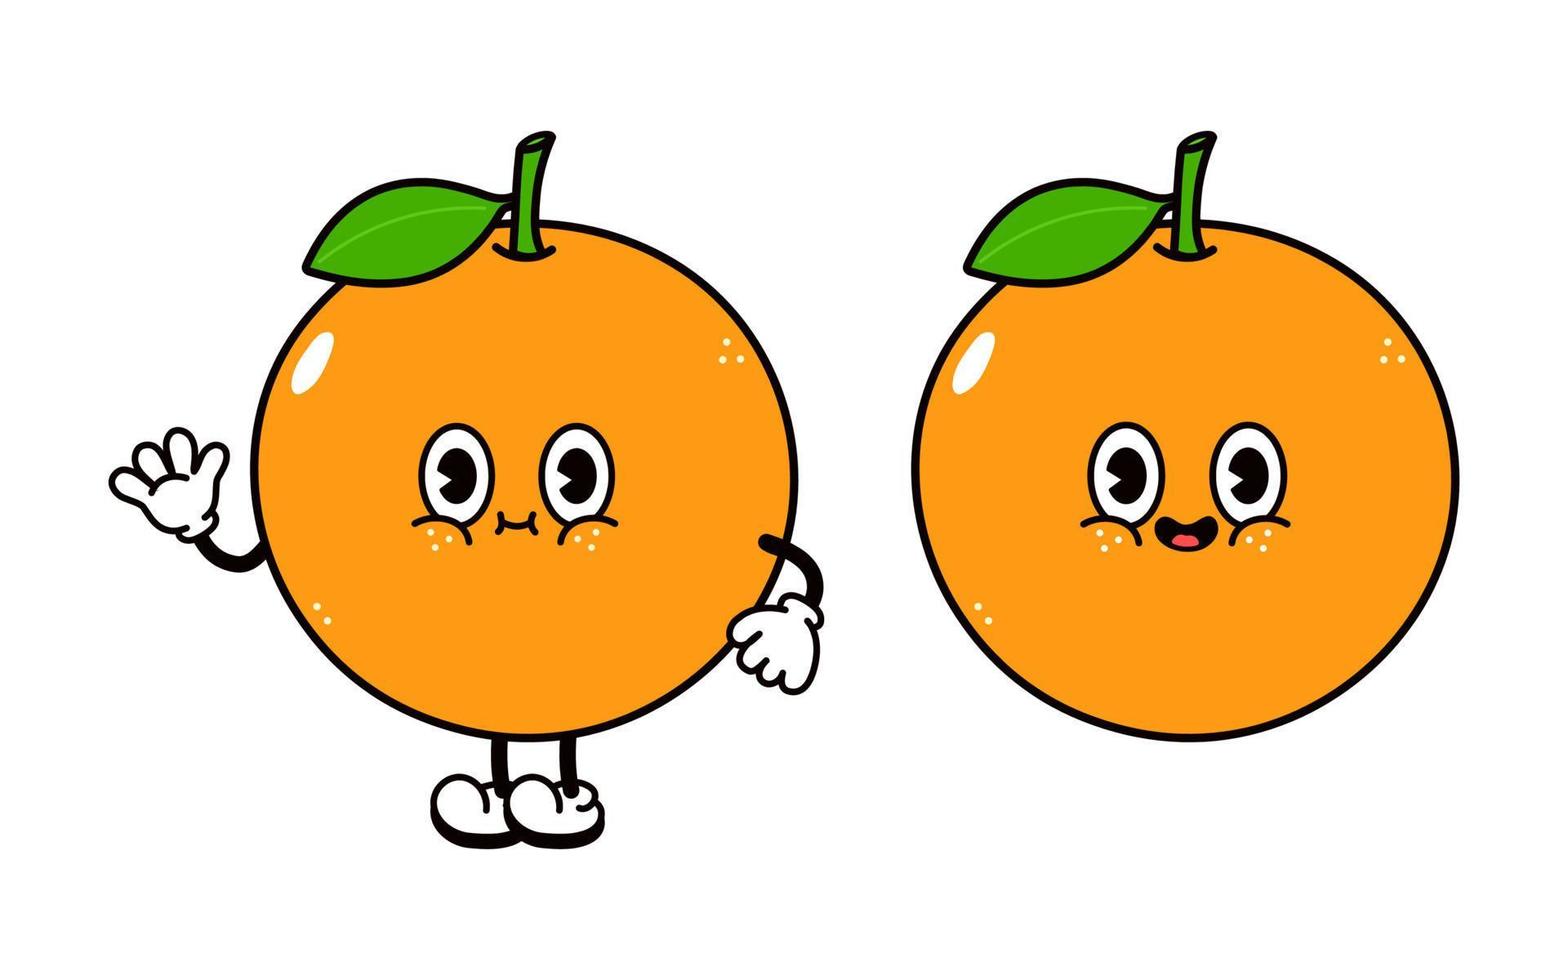 lindo y divertido personaje de mano que agita la fruta naranja. vector dibujado a mano dibujos animados tradicionales vintage, retro, icono de ilustración de carácter kawaii. aislado sobre fondo blanco. concepto de personaje de fruta naranja